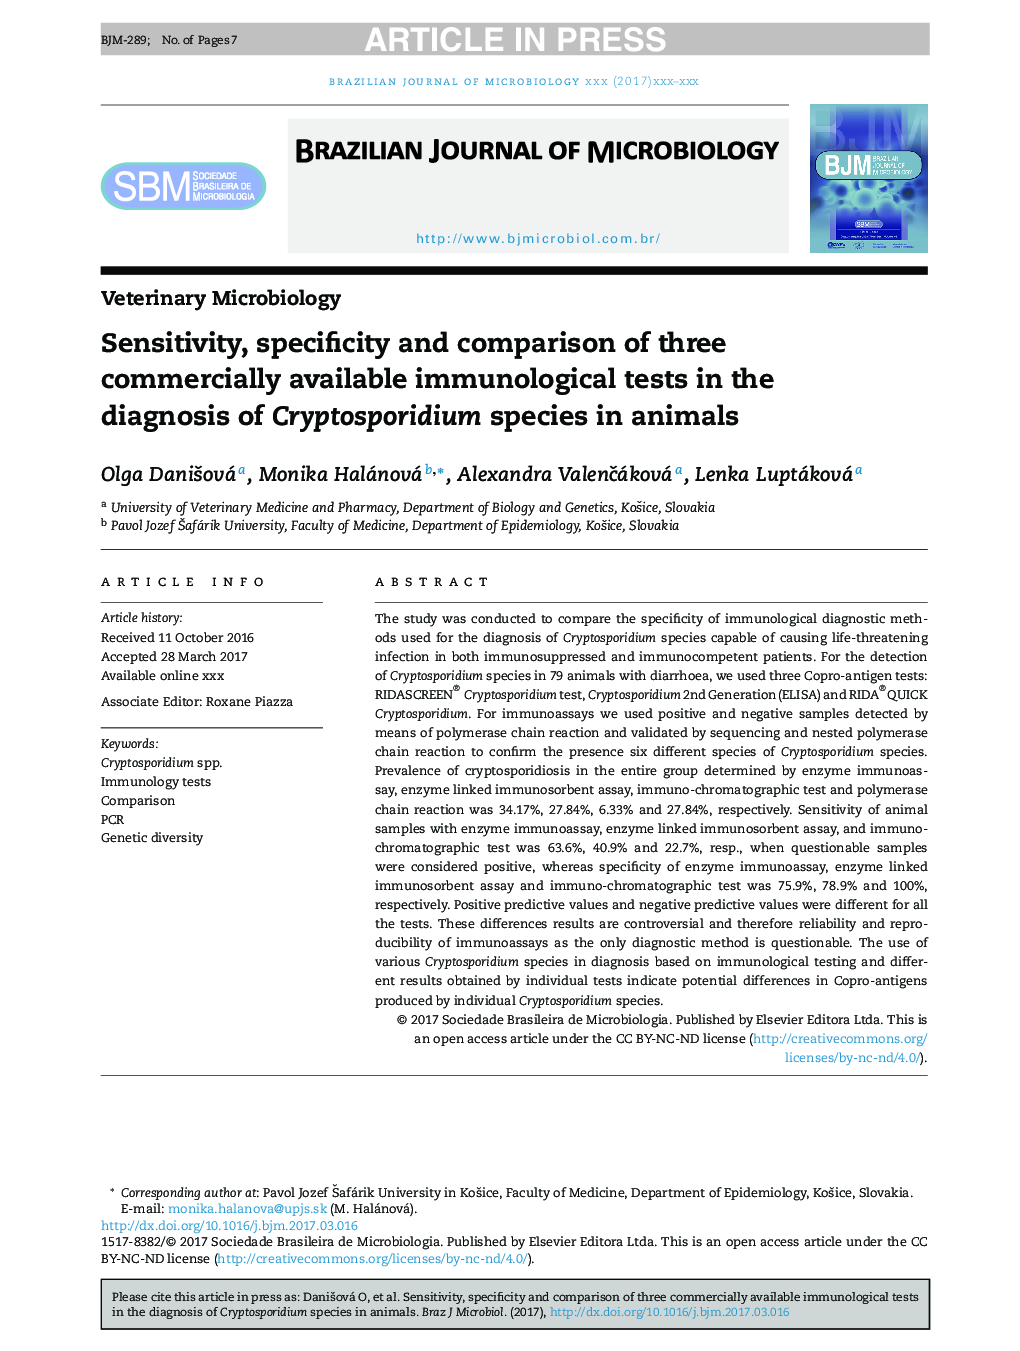 حساسیت، ویژگی و مقایسه سه آزمایش ایمونولوژیک موجود در تشخیص گونه های کریپتوسپوریدیوم در حیوانات 